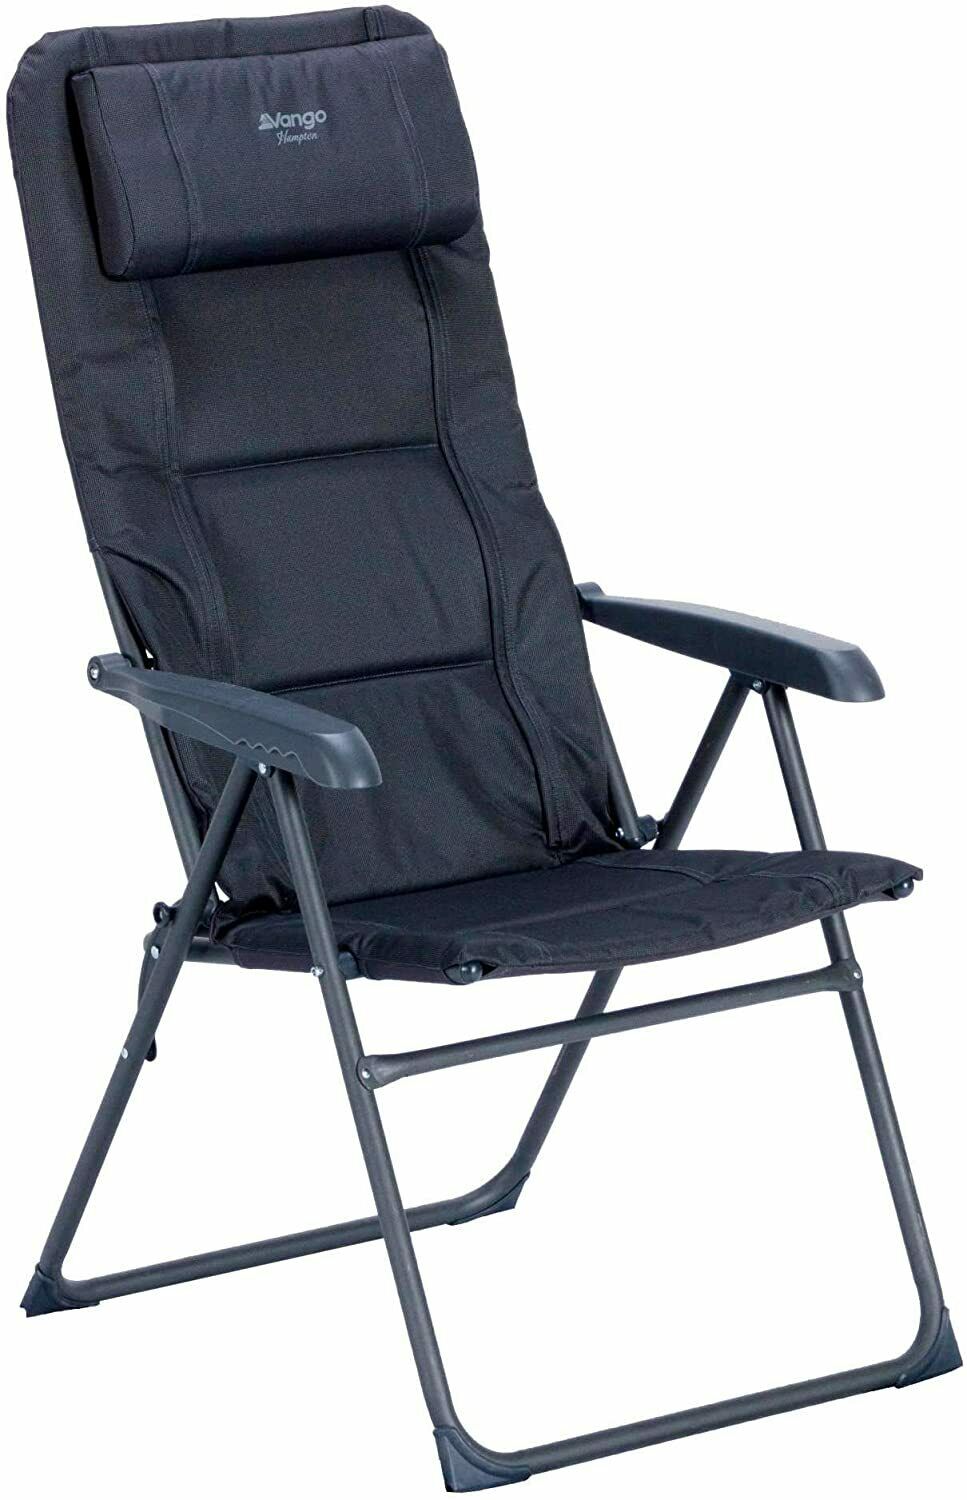 Vango Hampton DLX Chair (Camping / Garden Recliner)